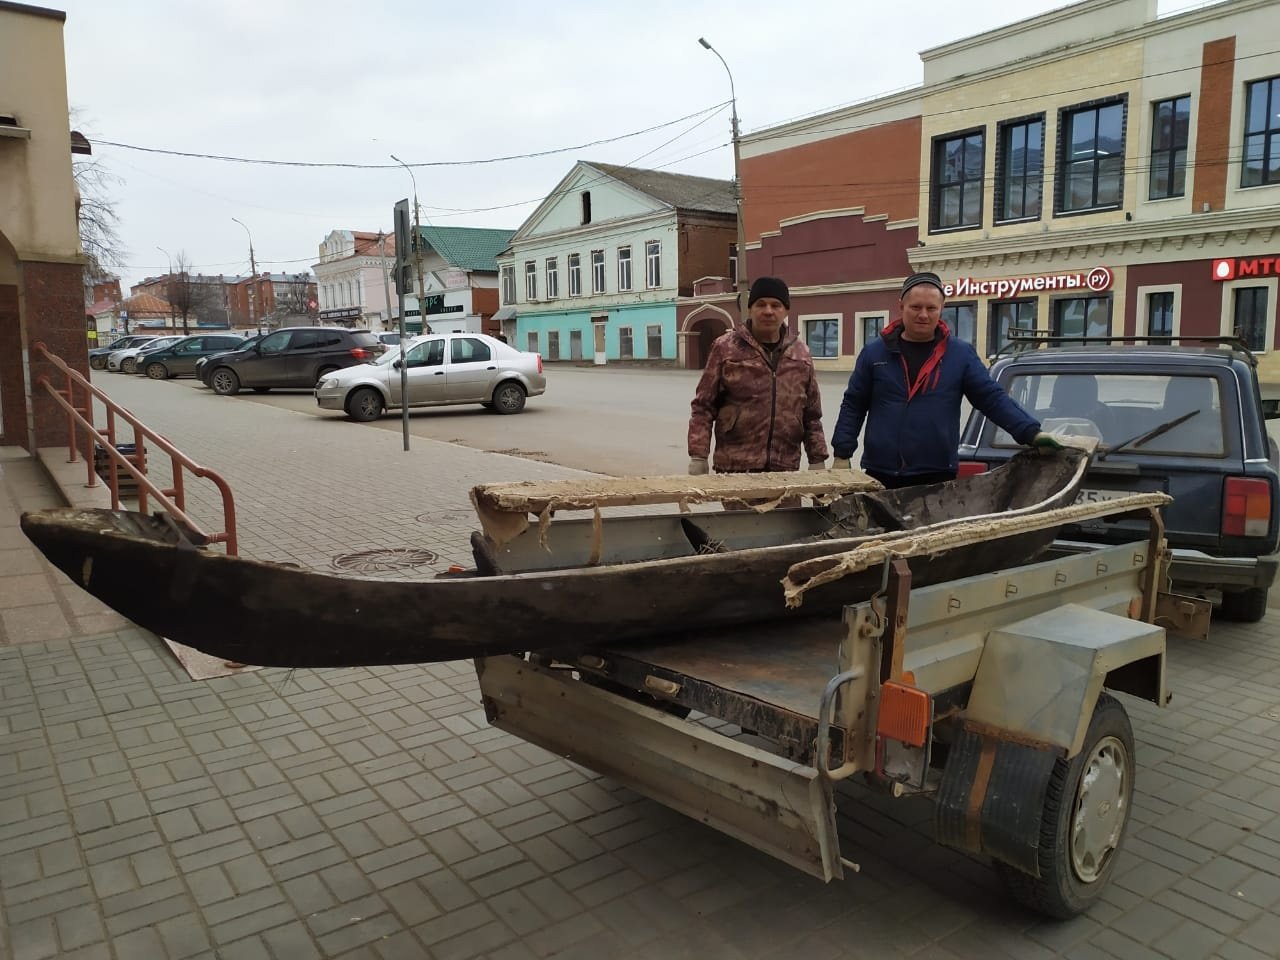 Фонды Музея истории Воткинска пополнились старинной лодкой